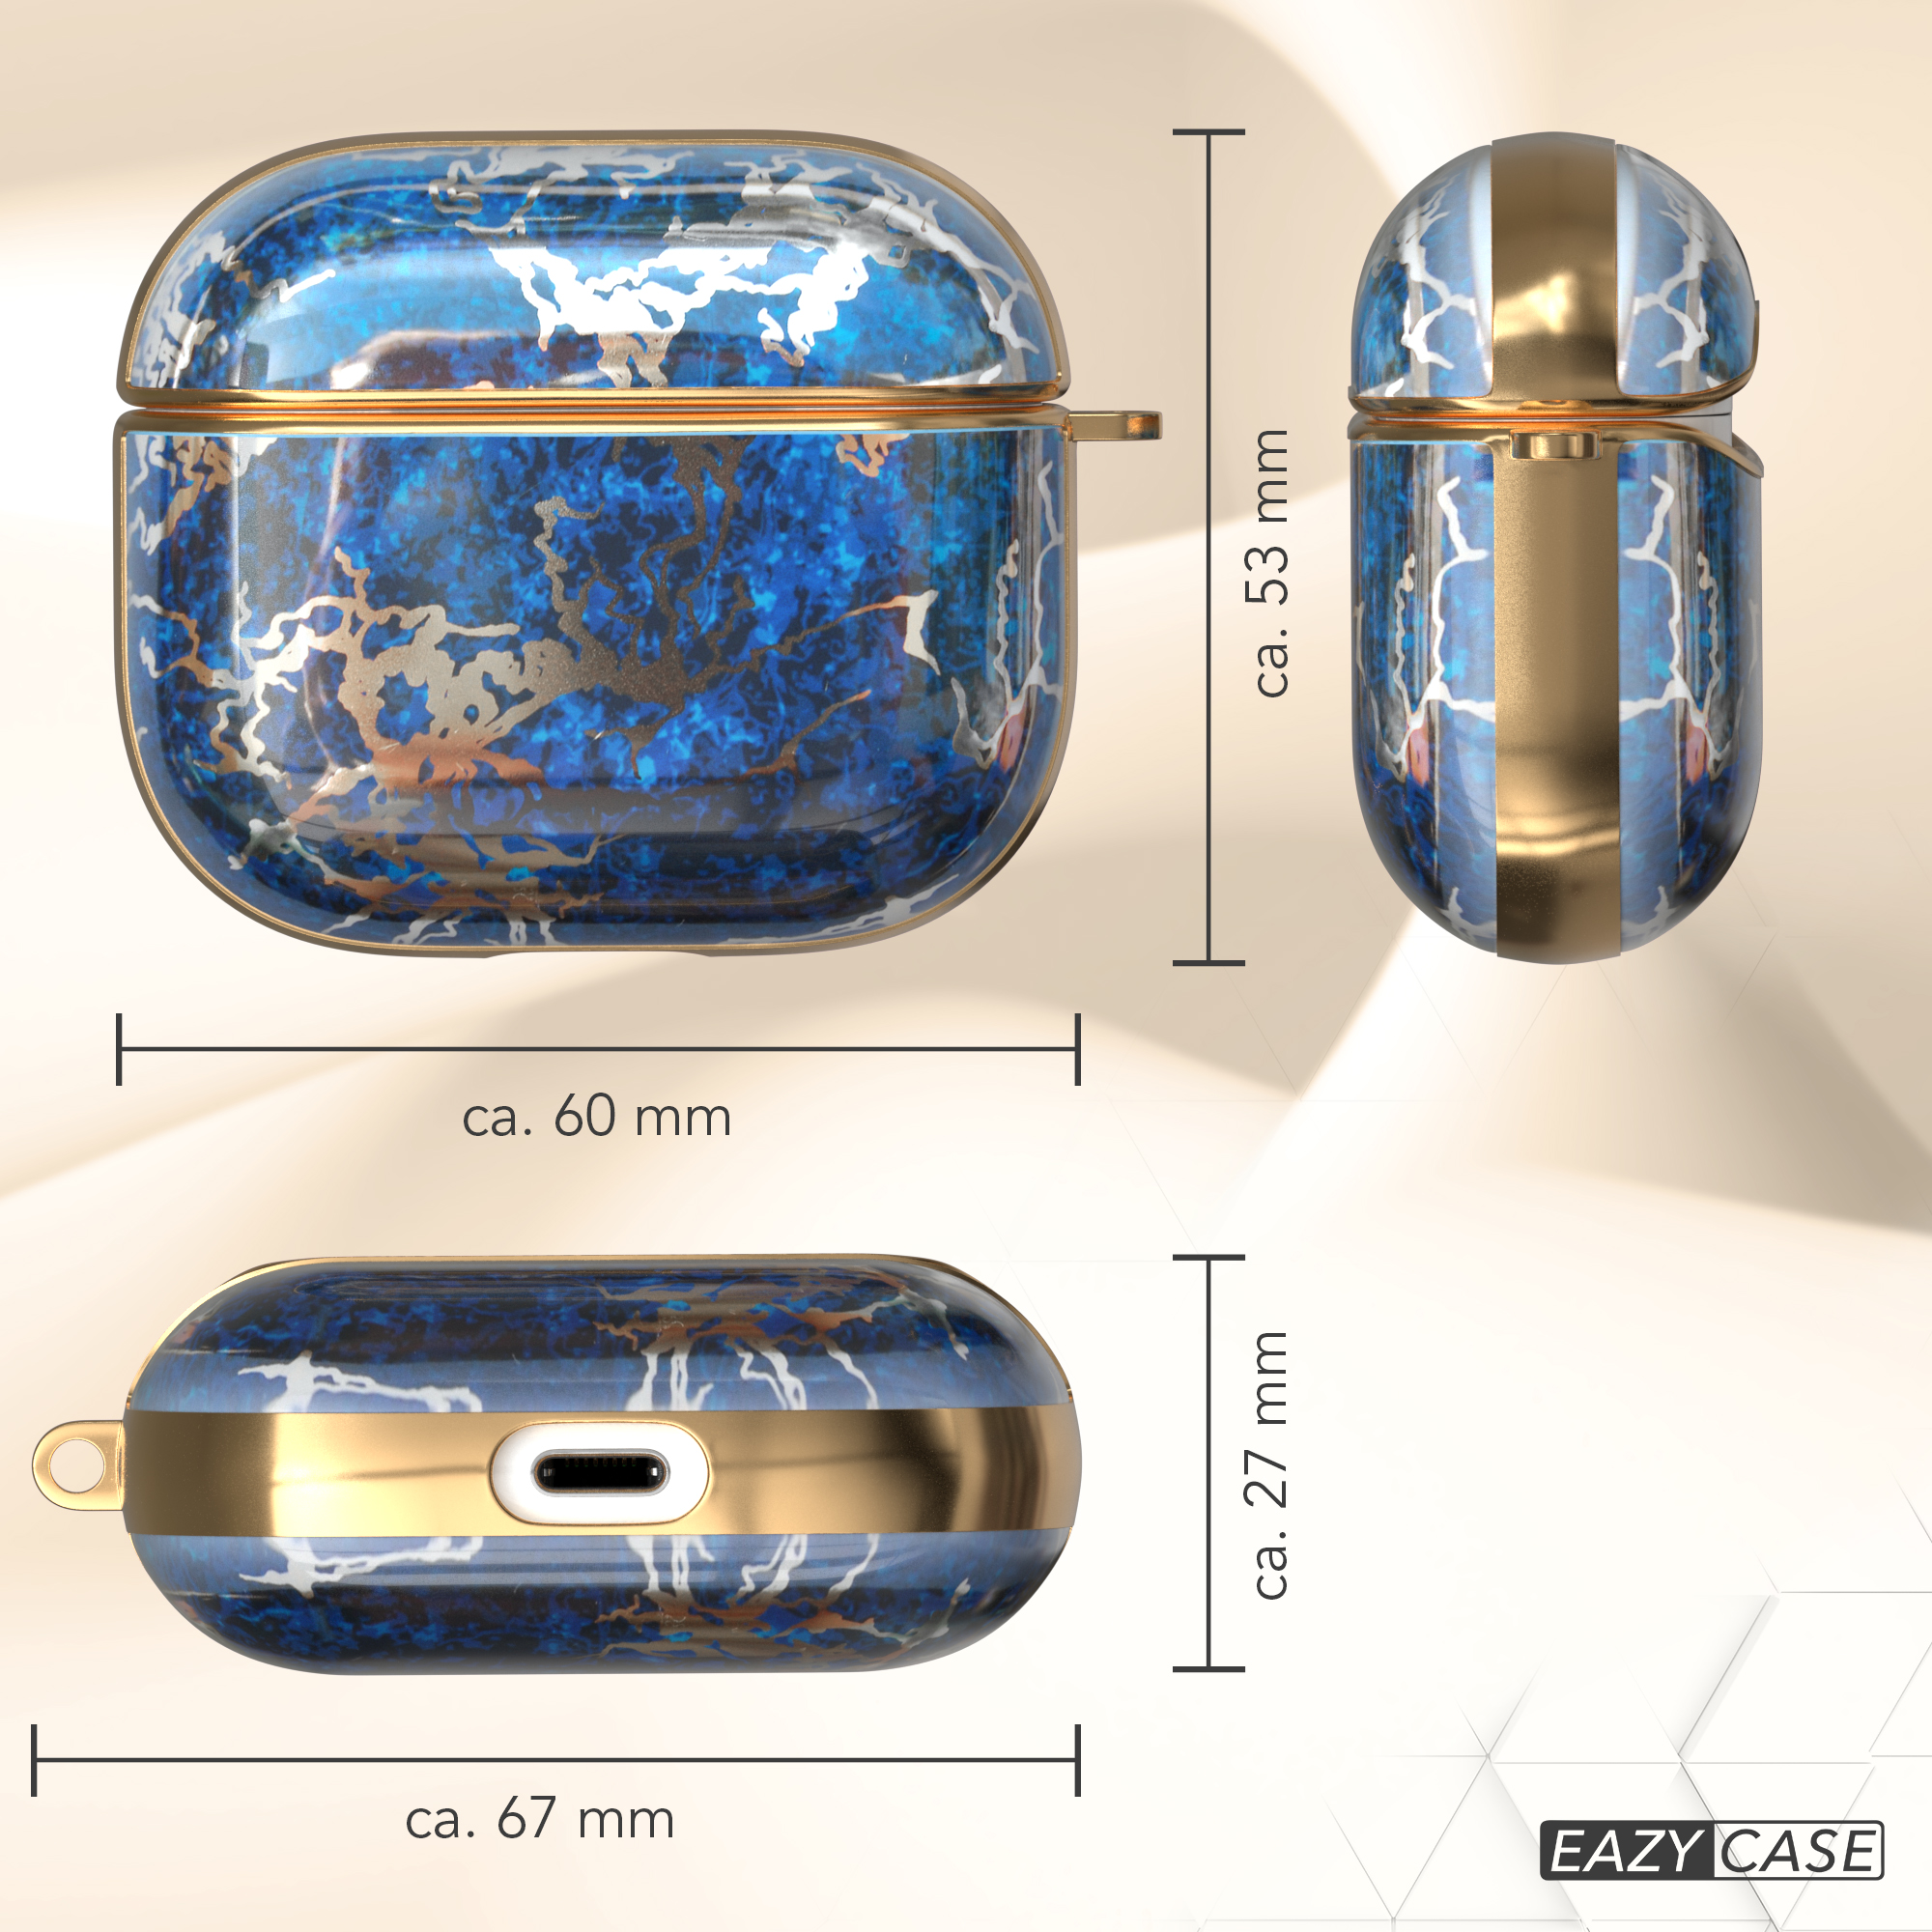 Case CASE Blau 3 IMD AirPods Gold Schutzhülle für: passend / Sleeve EAZY Motiv Apple